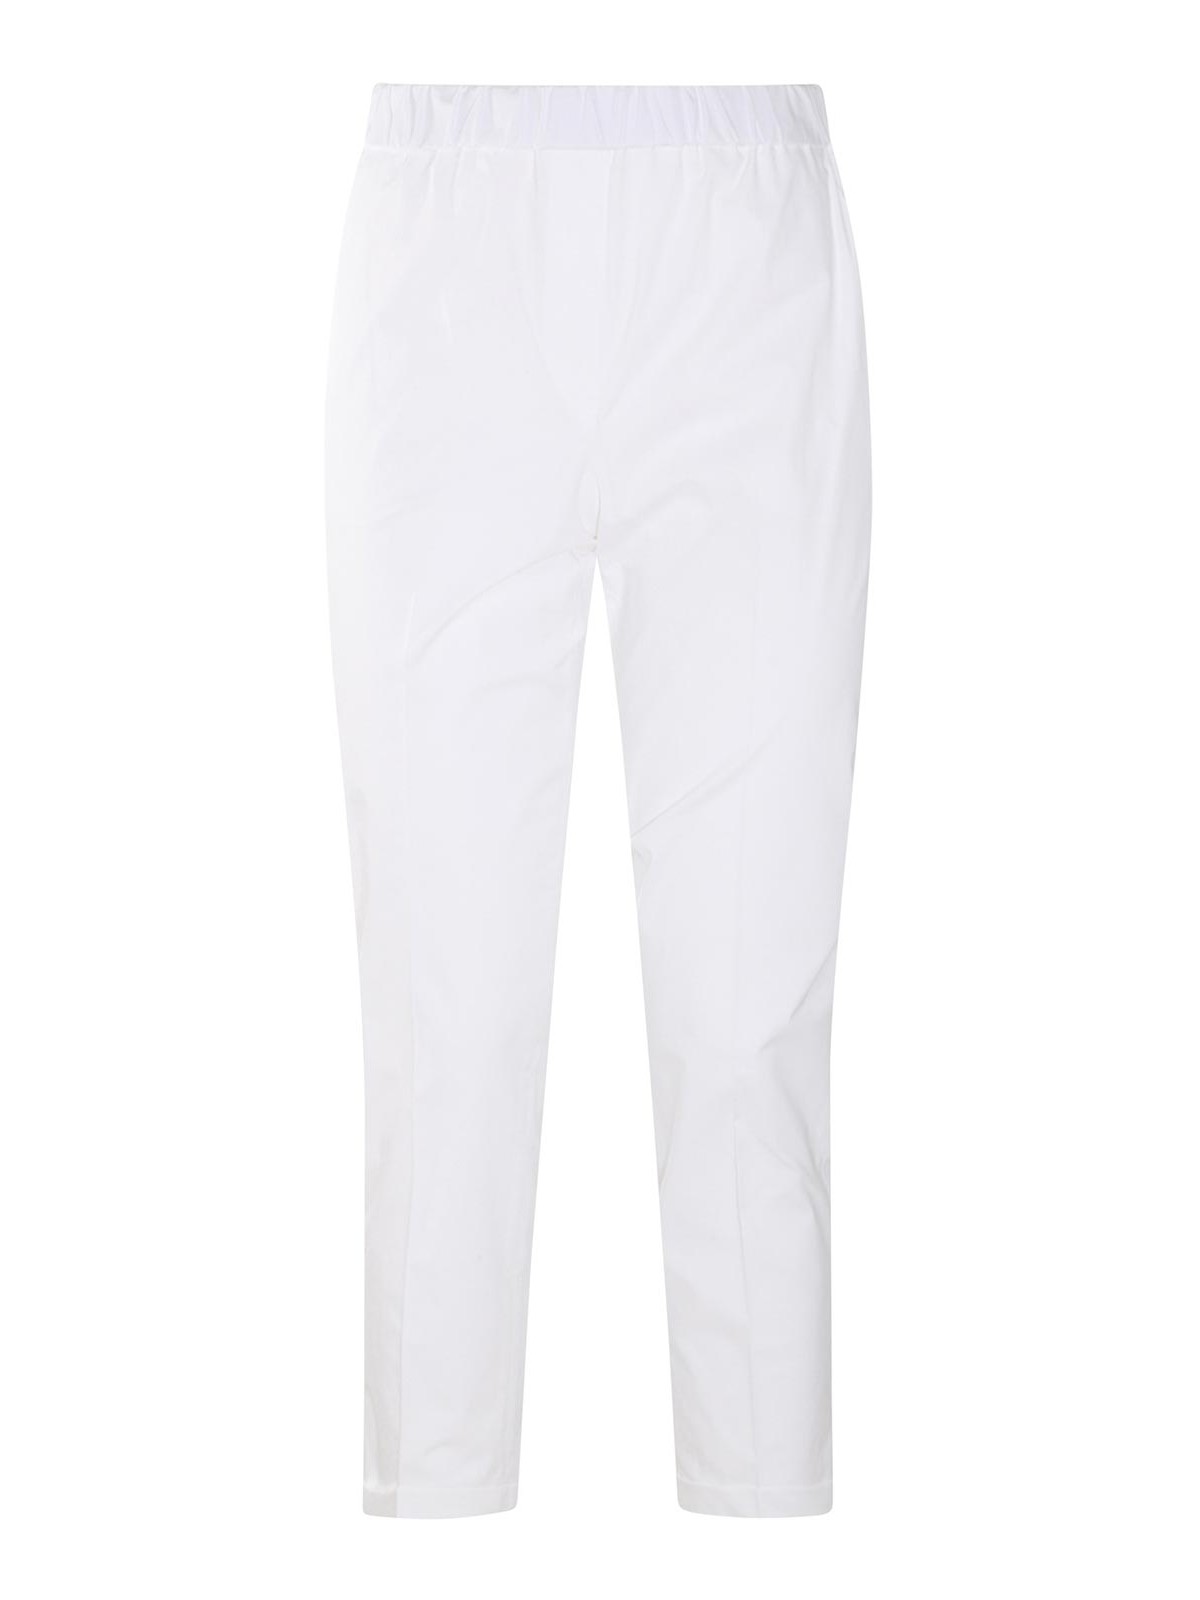 Antonelli Firenze White Cotton Trousers